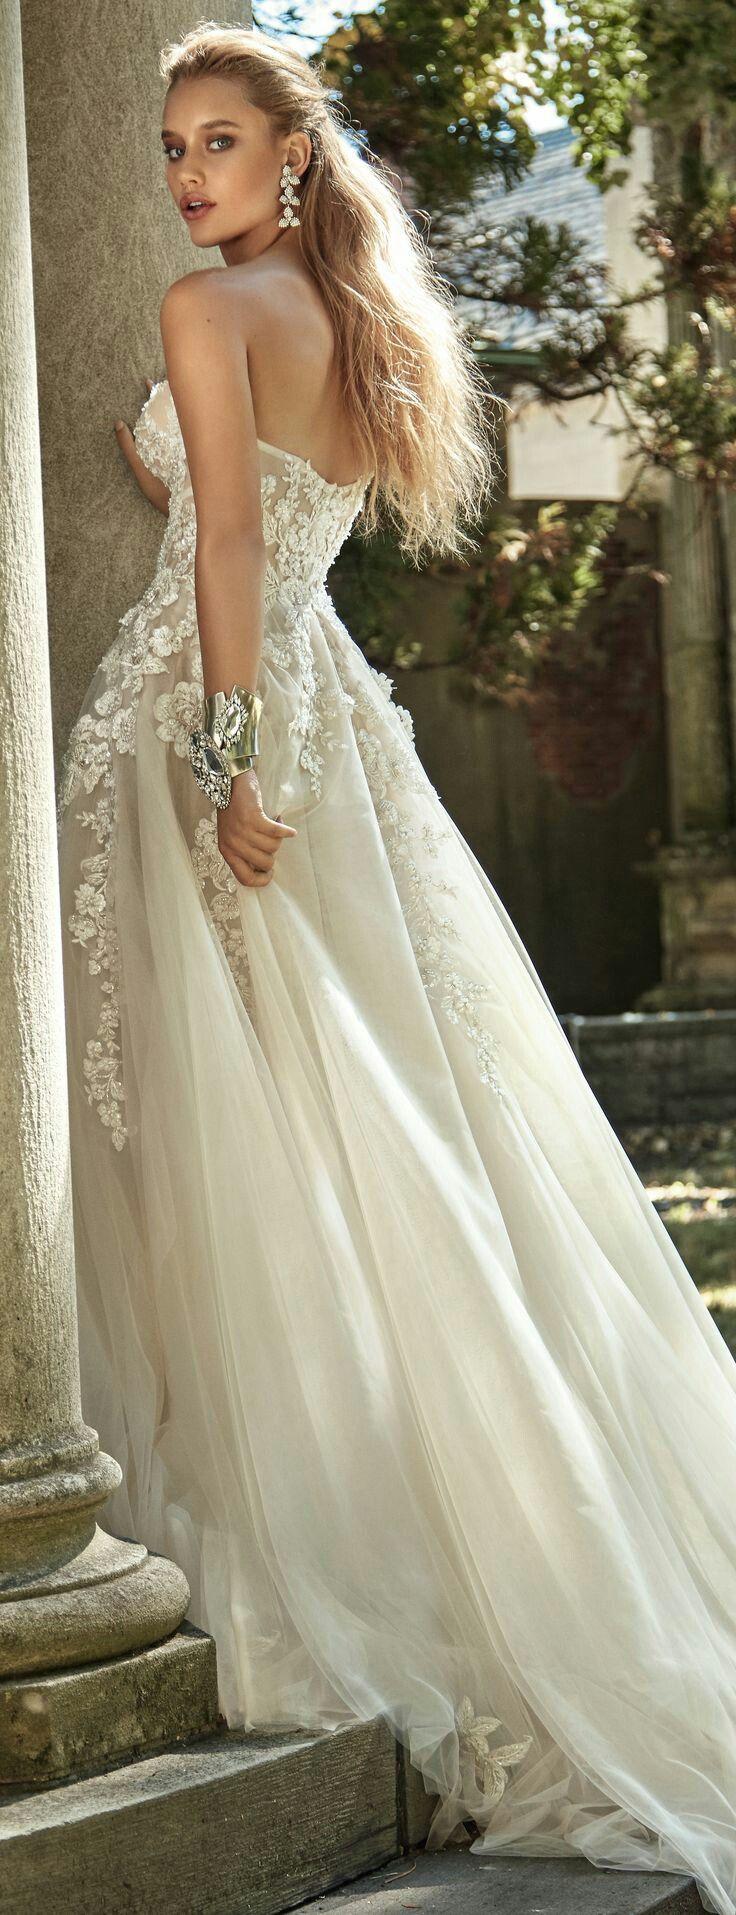 زفاف - Vestidos De Novia